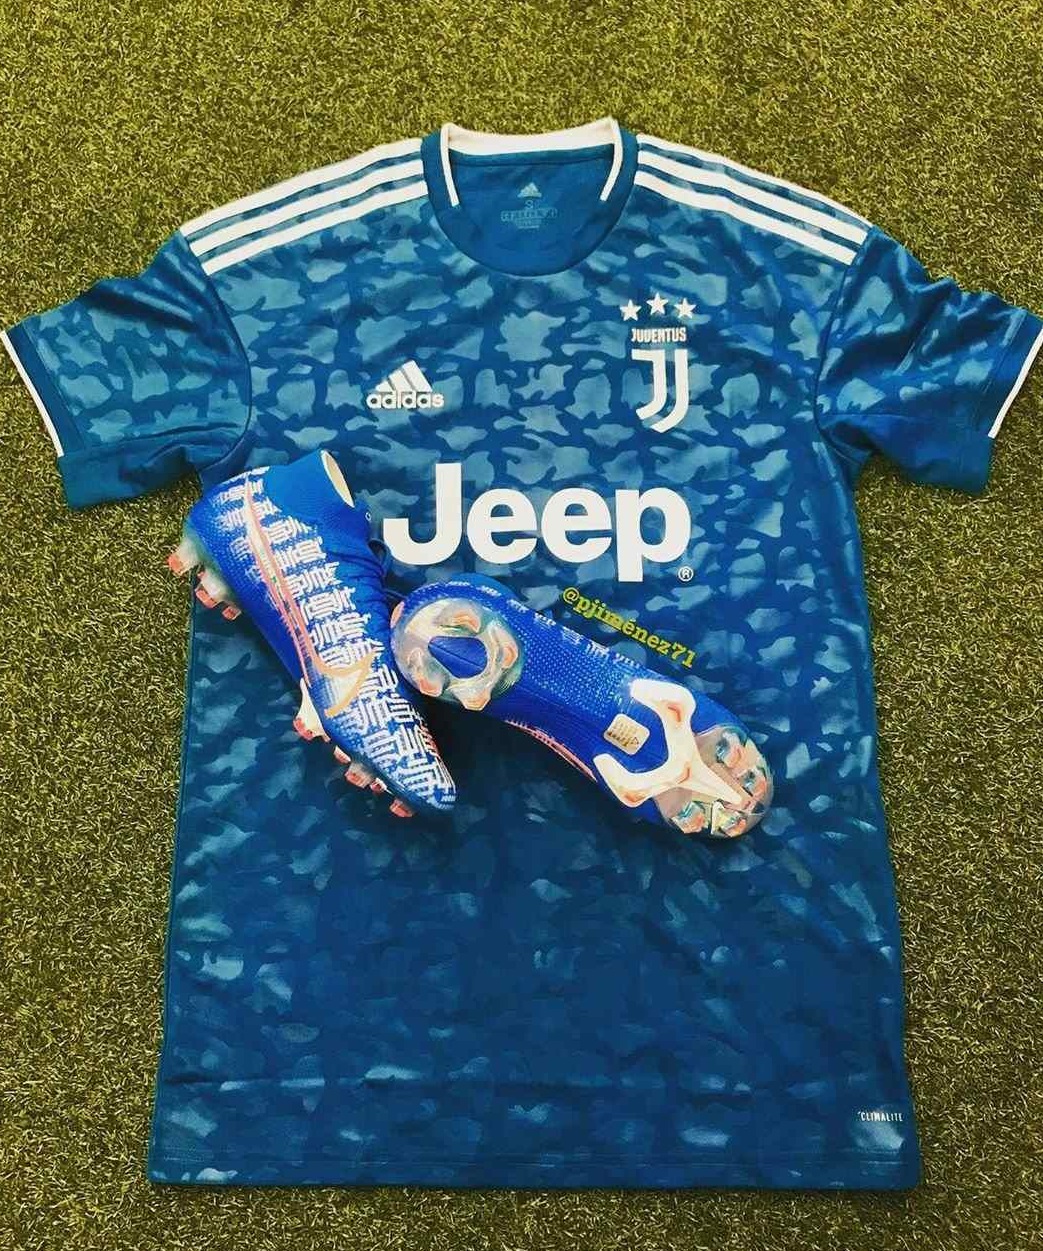 Juventus 2019 2020 nouveau maillot third bleu